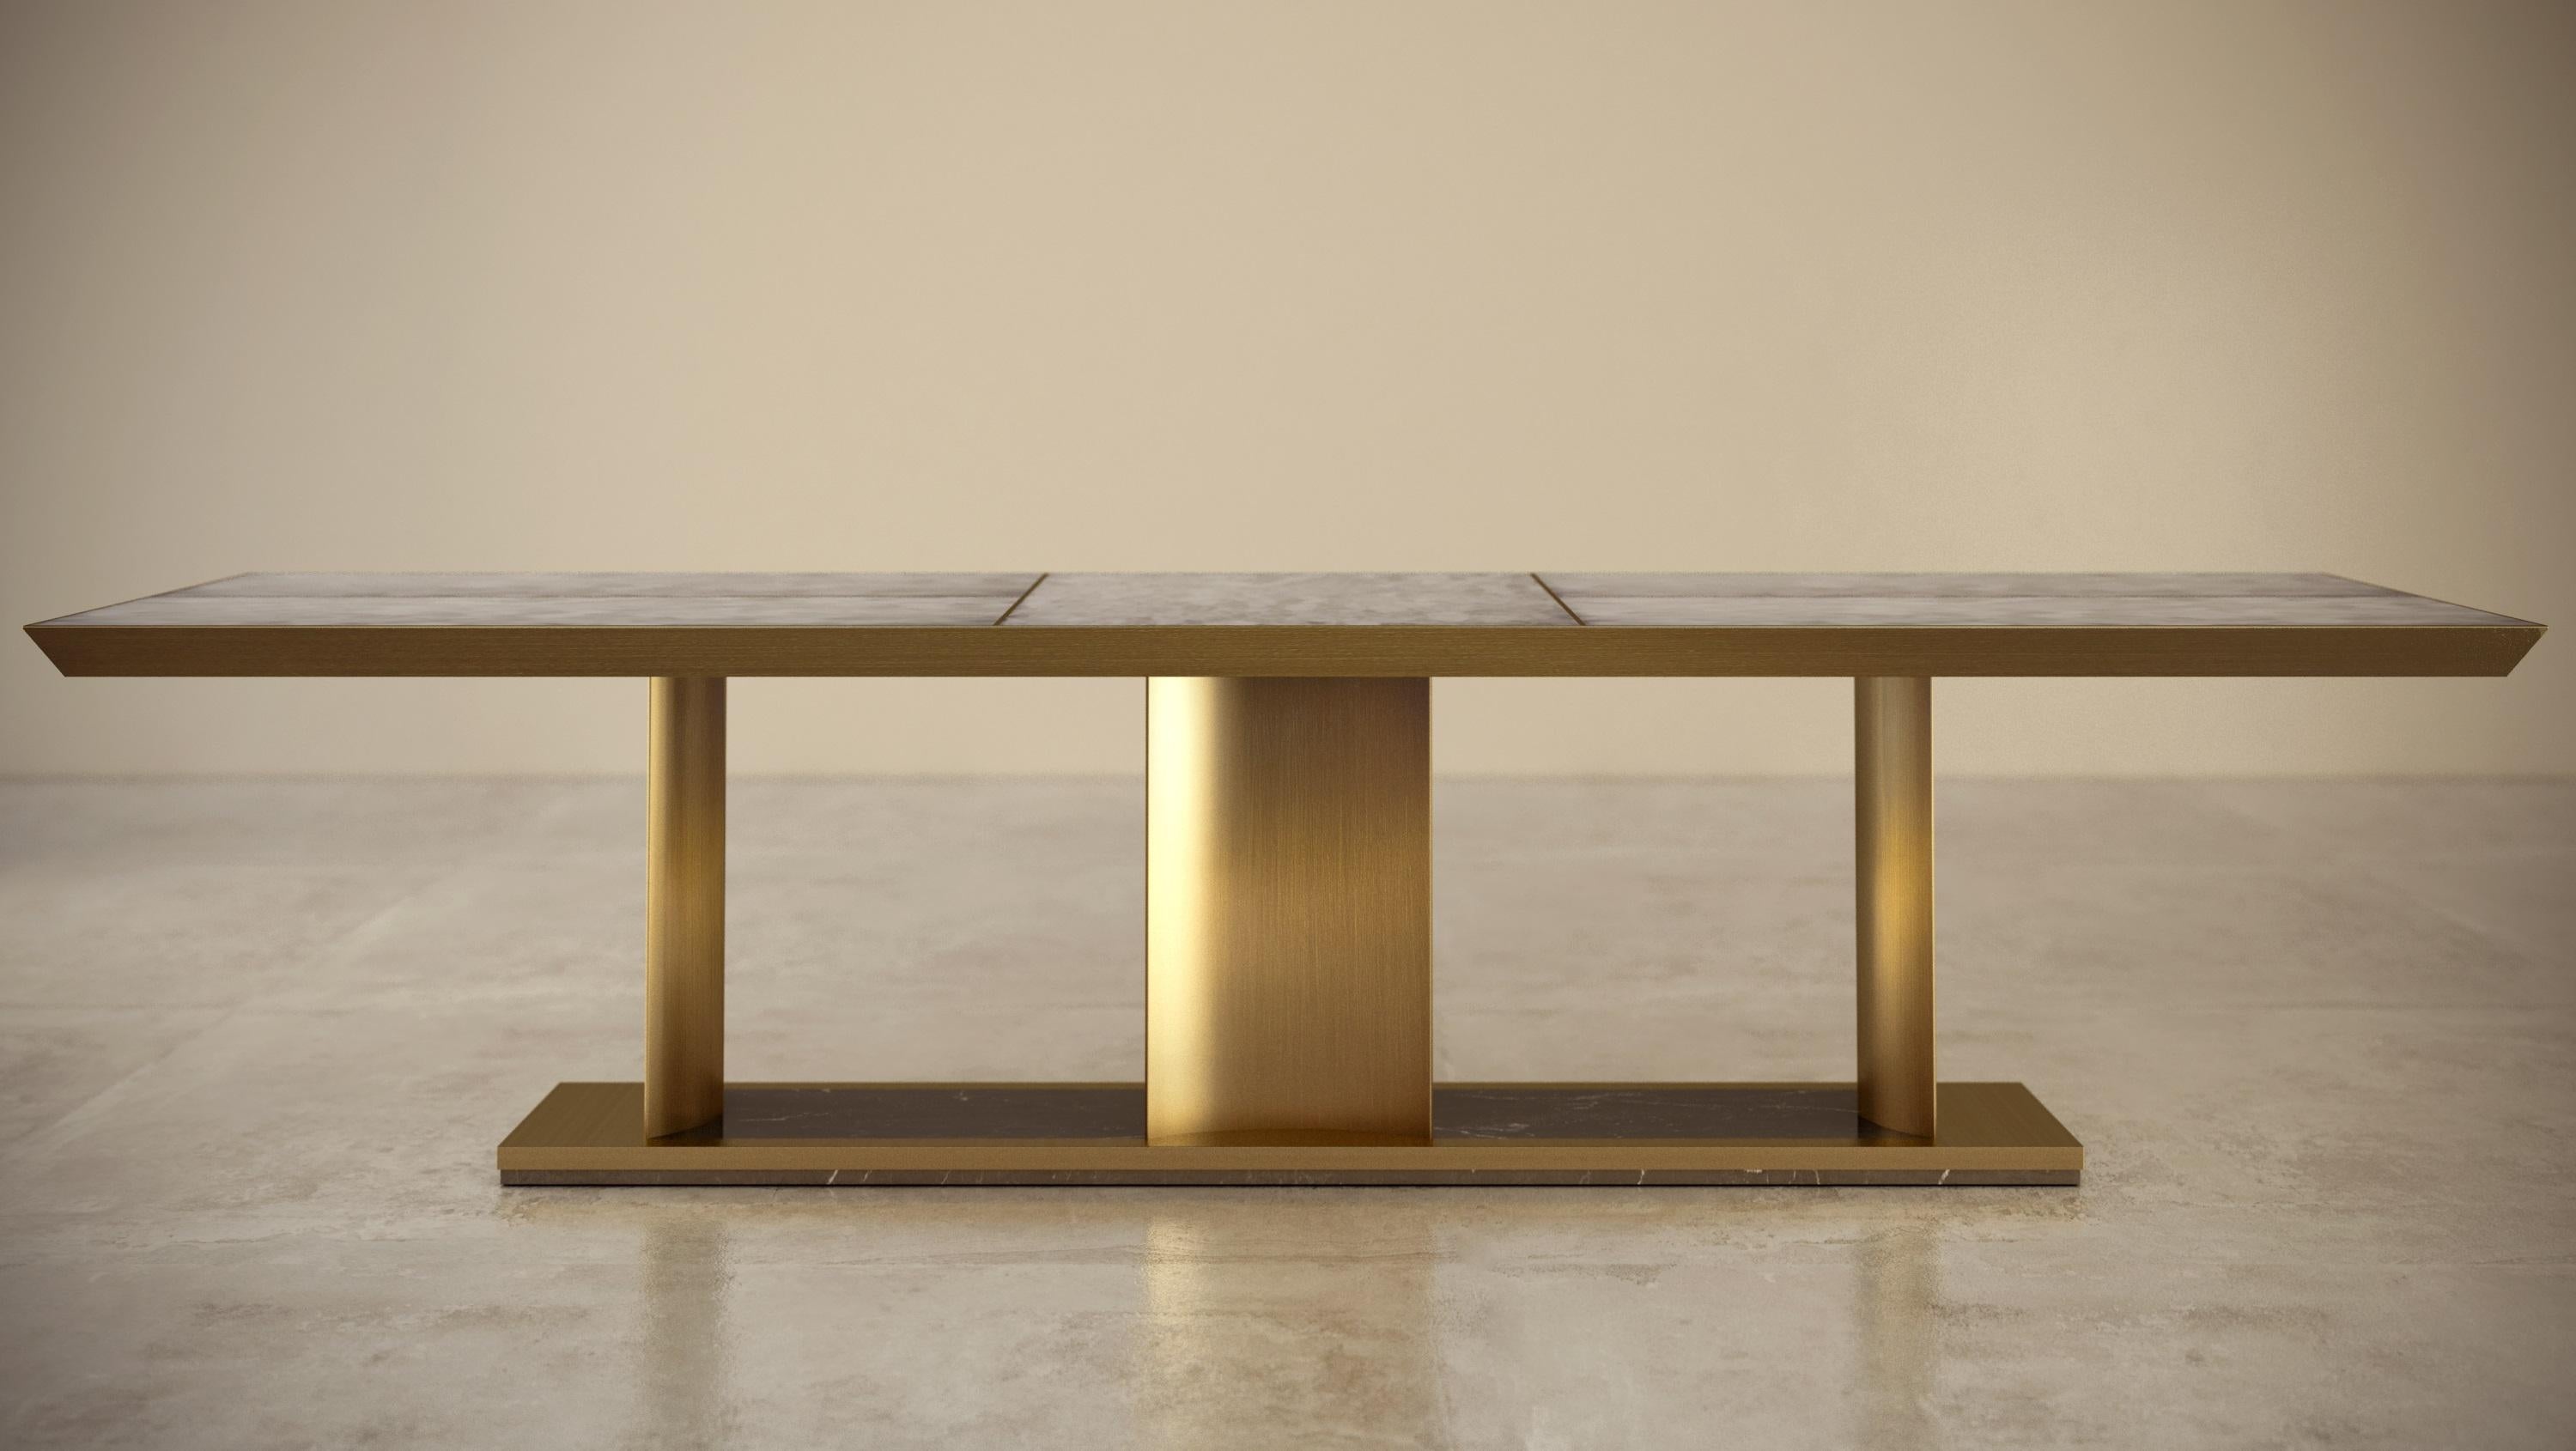 Table de salle à manger composée de marbre et de finitions en métal laiton, créée par Michele Arcarese Architect en collaboration avec Giovannozzi.
- Dessus à bord biseauté en marbre affleurant de type 